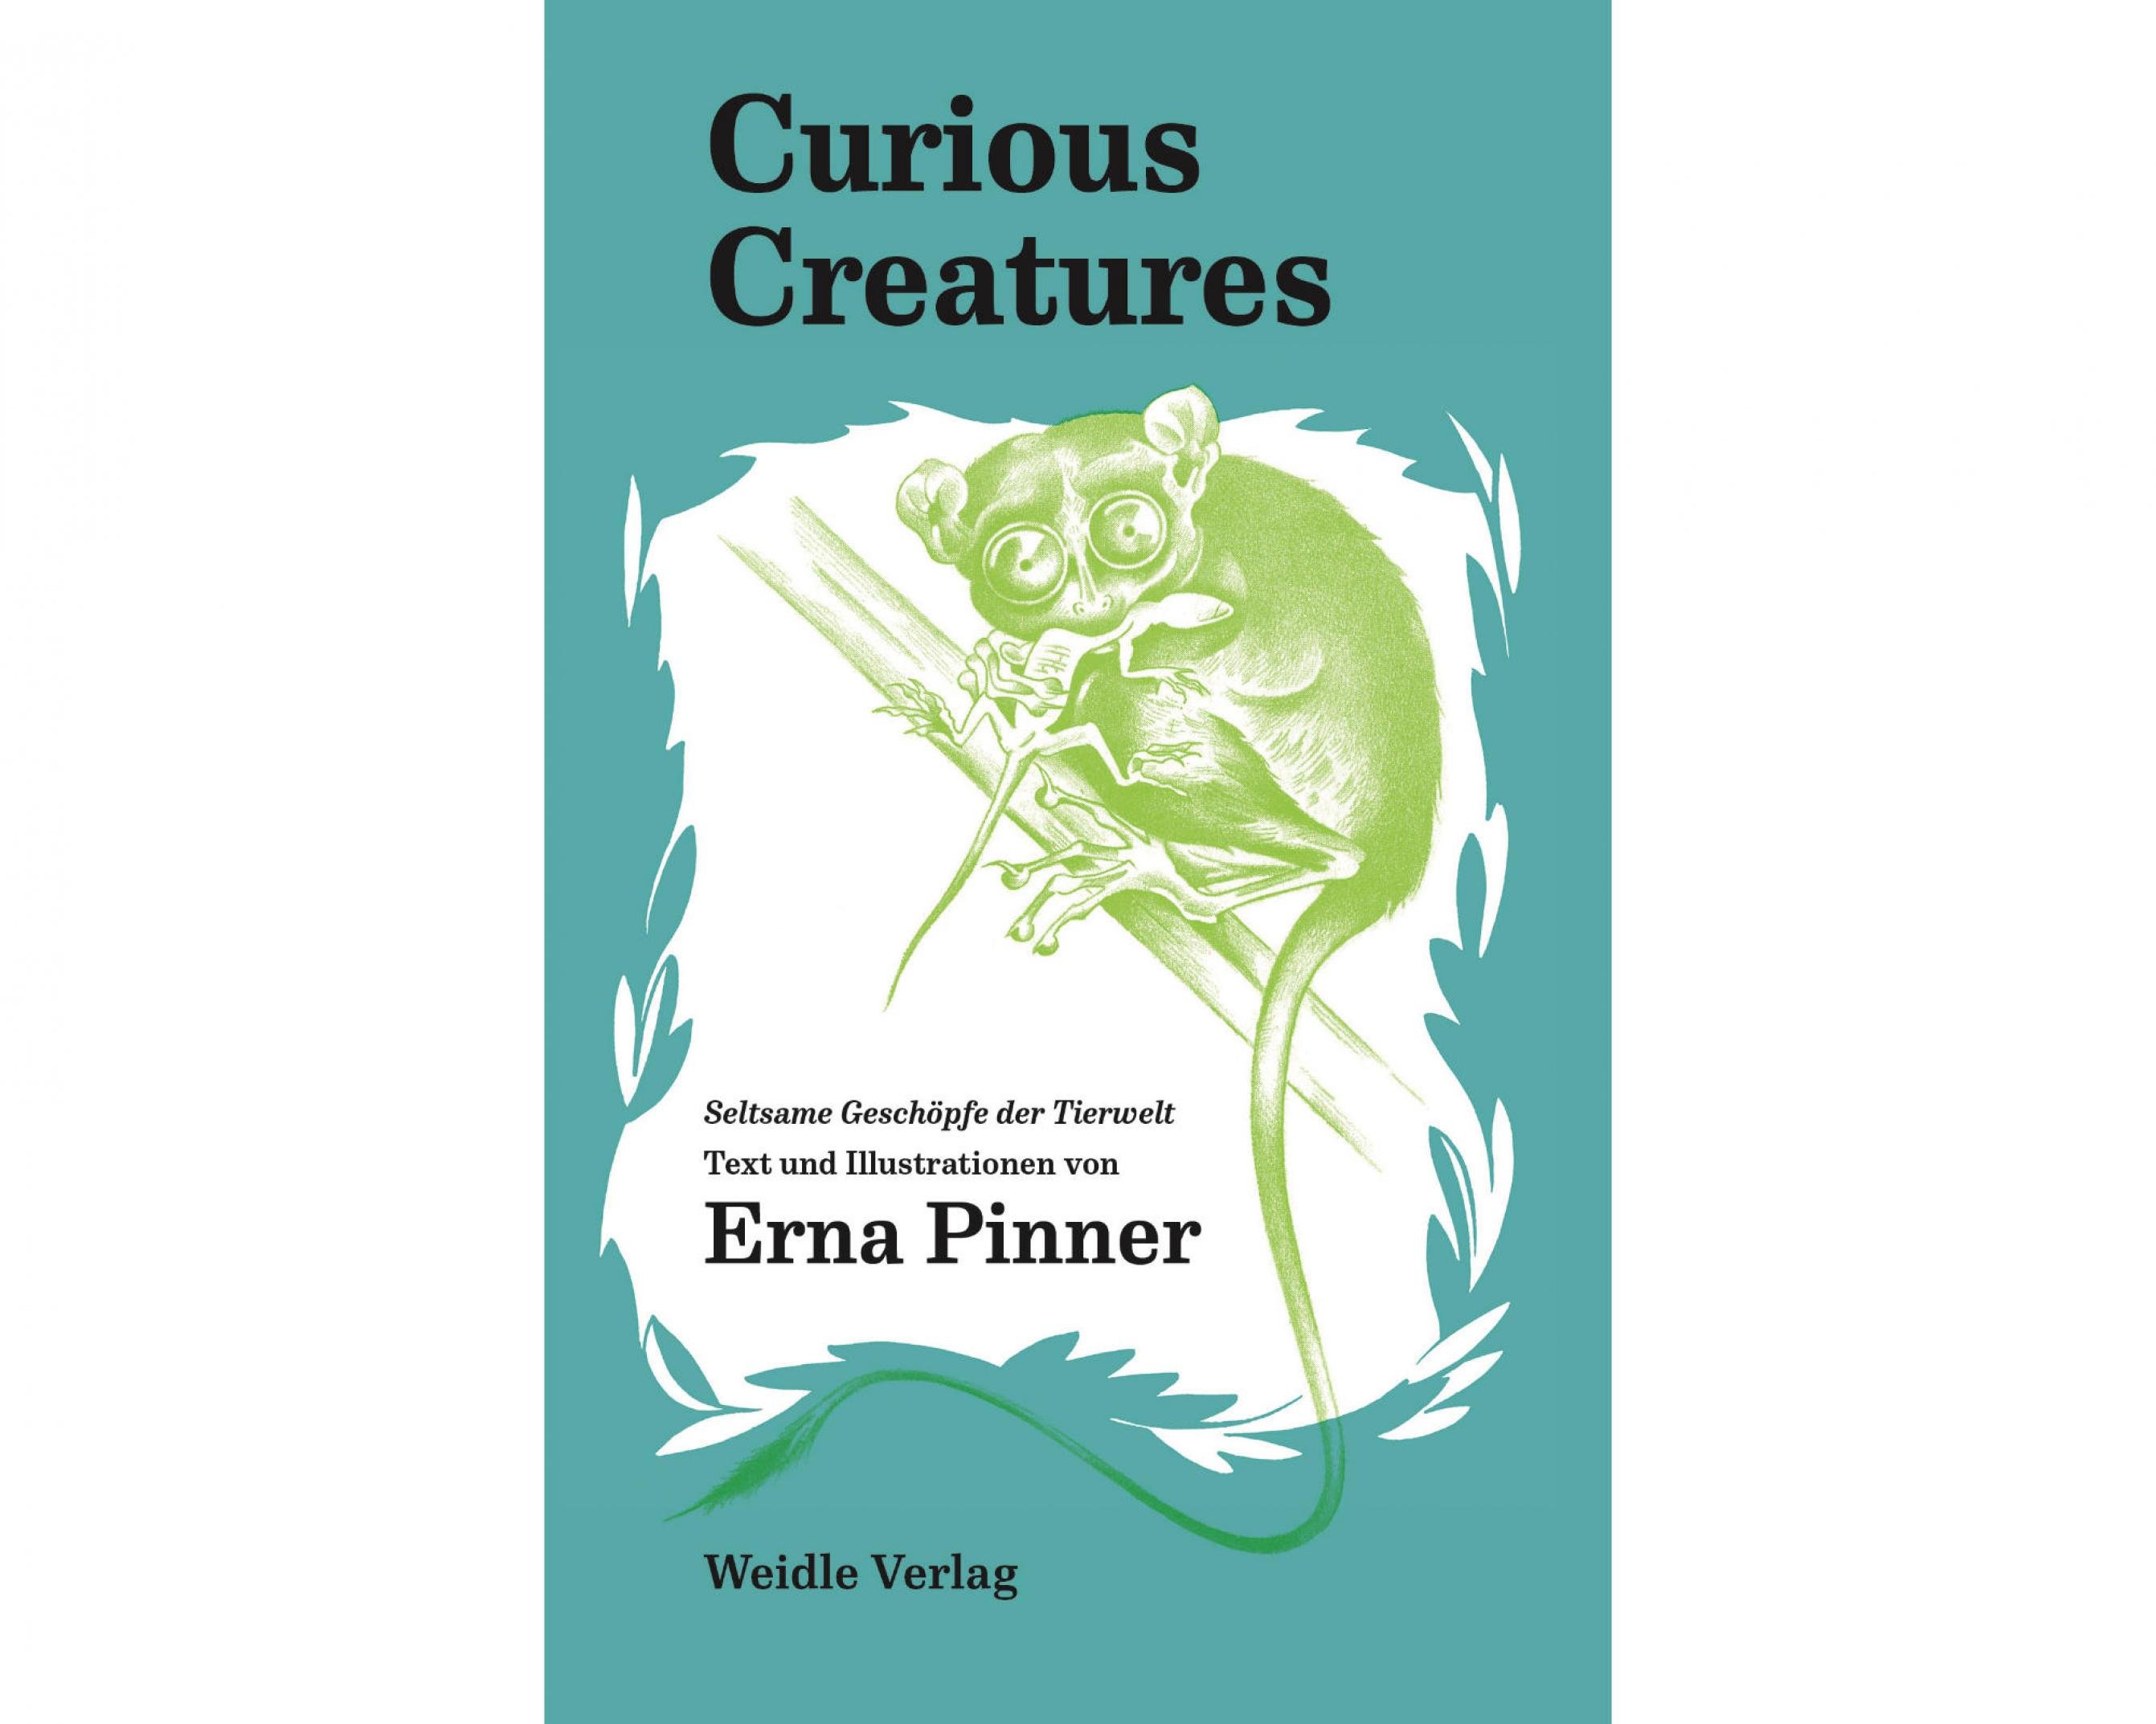 Das Titelbild des Buchs „Curious Creatures“ zeigt einen Koboldmaki mit großen Augen auf einem Ast sitzen. Er beißt in eine Eidechse.